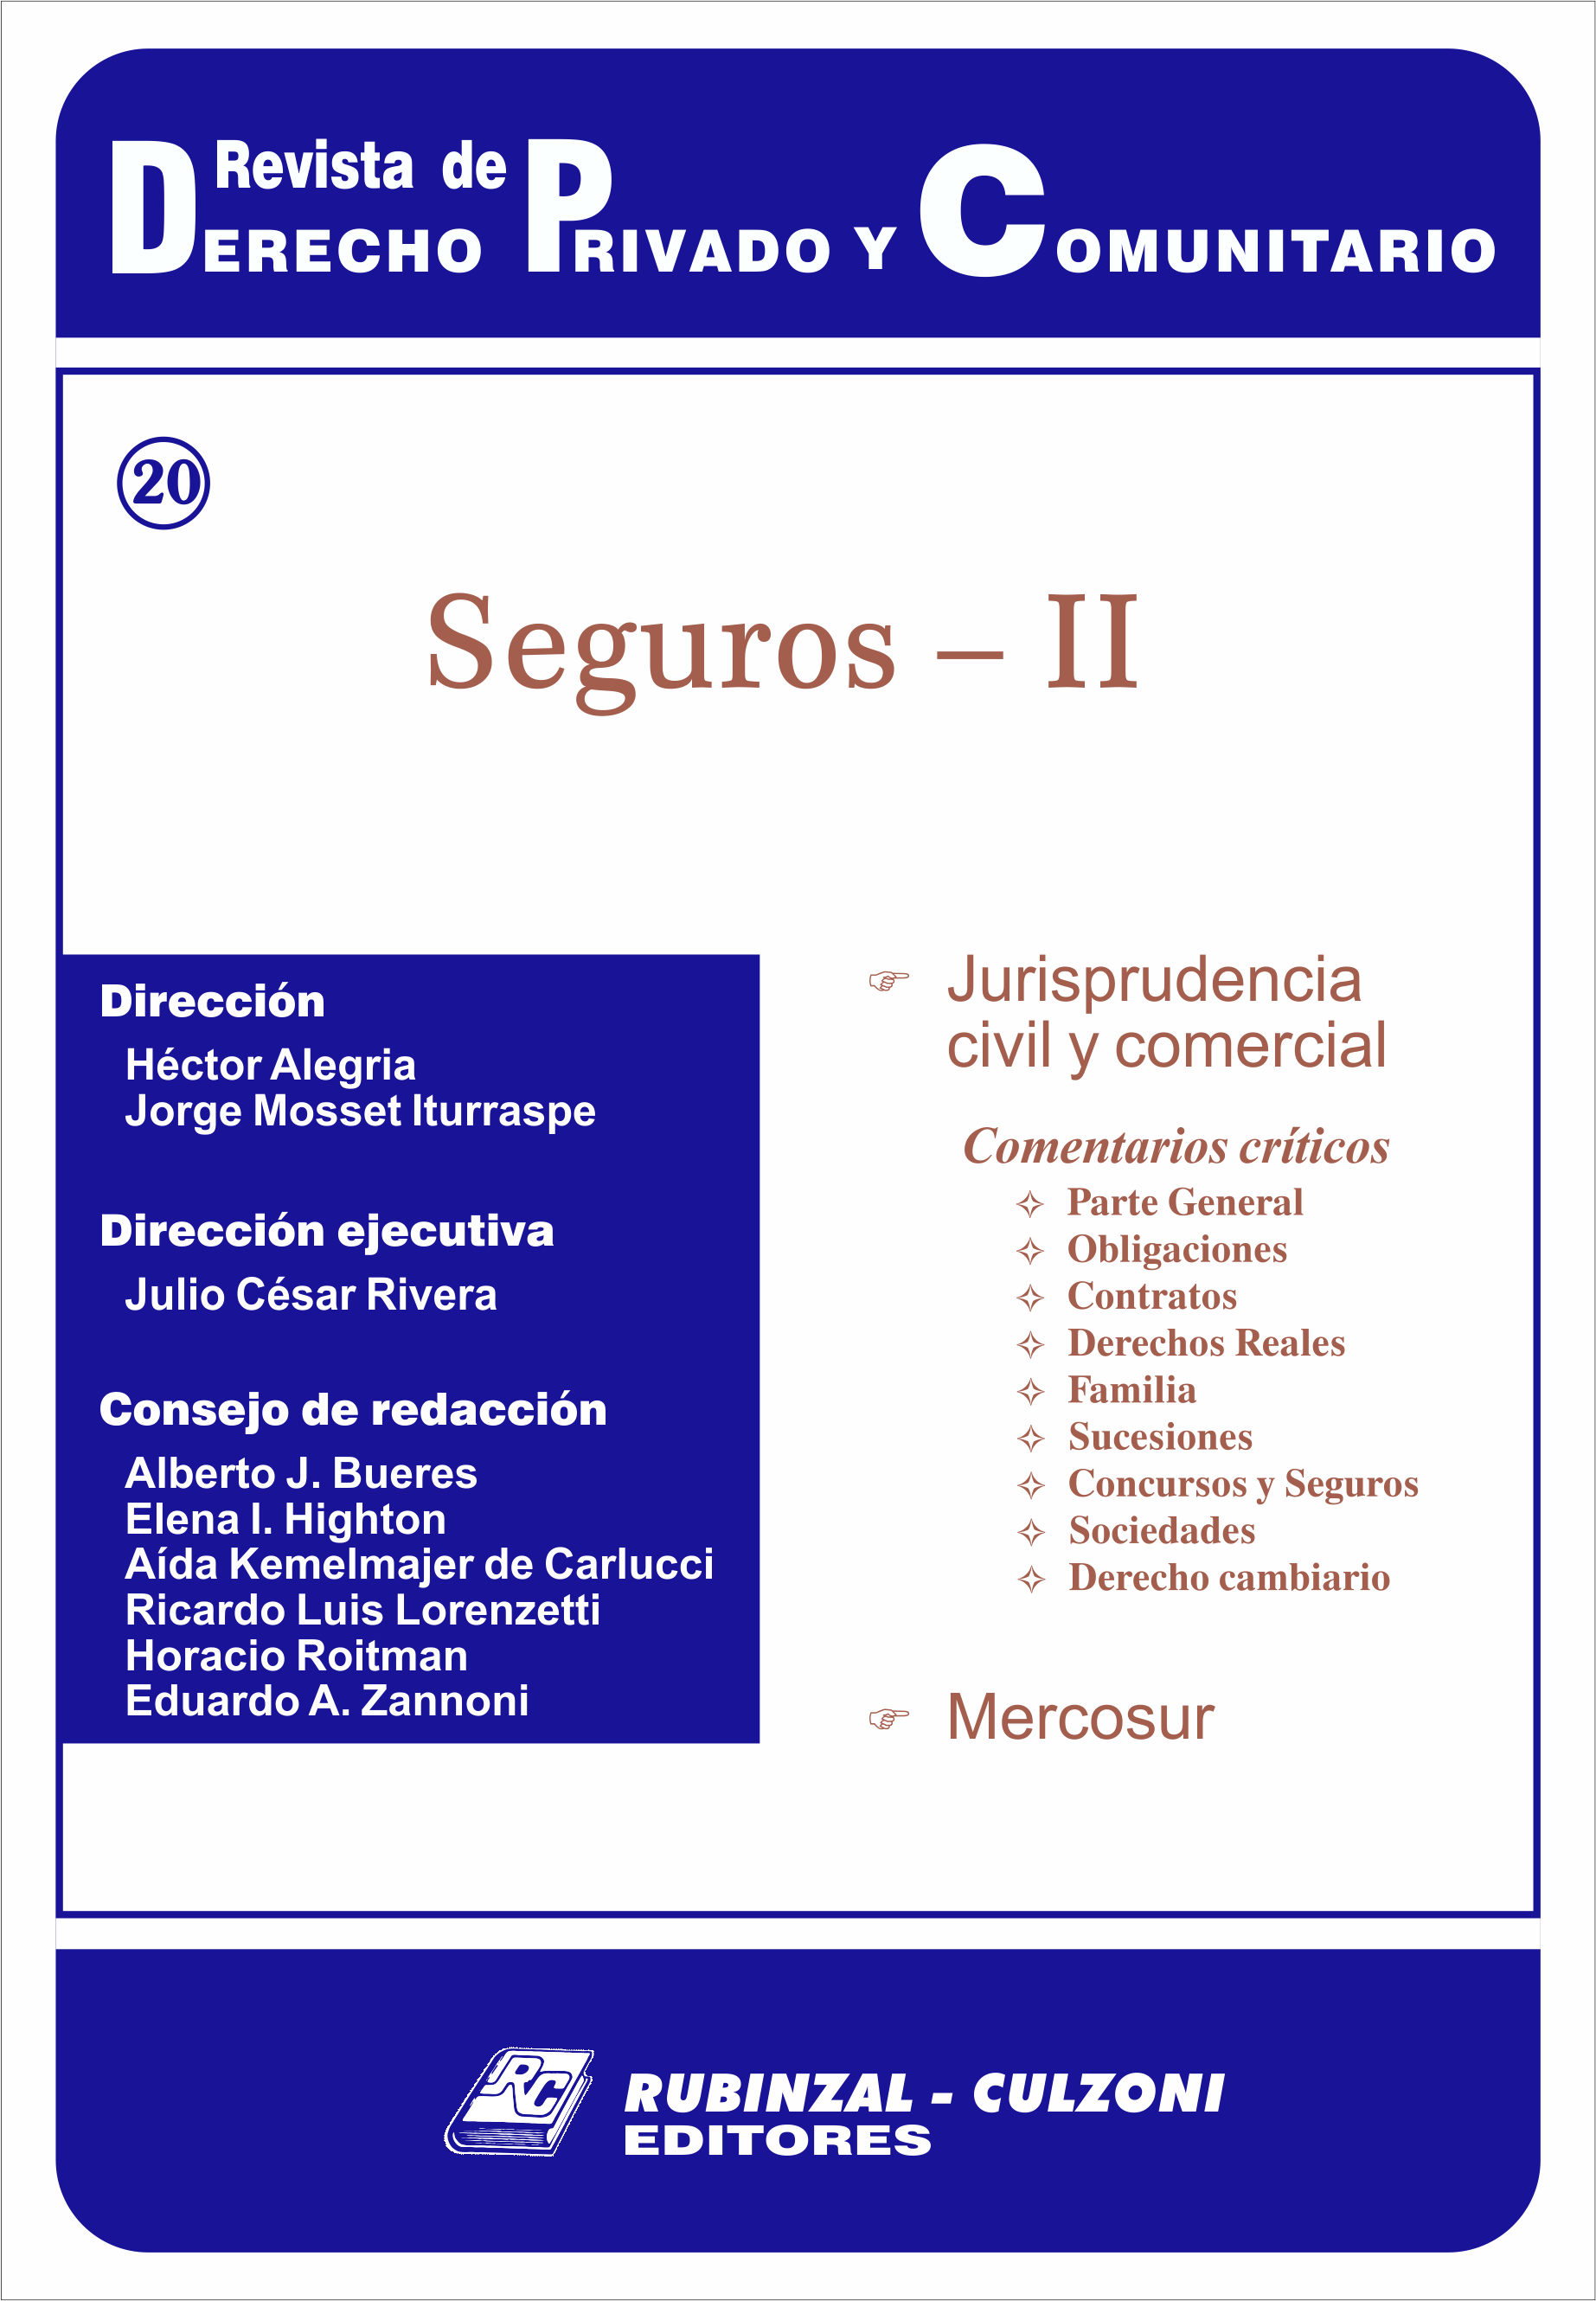 Revista de Derecho Privado y Comunitario - Seguros - II.